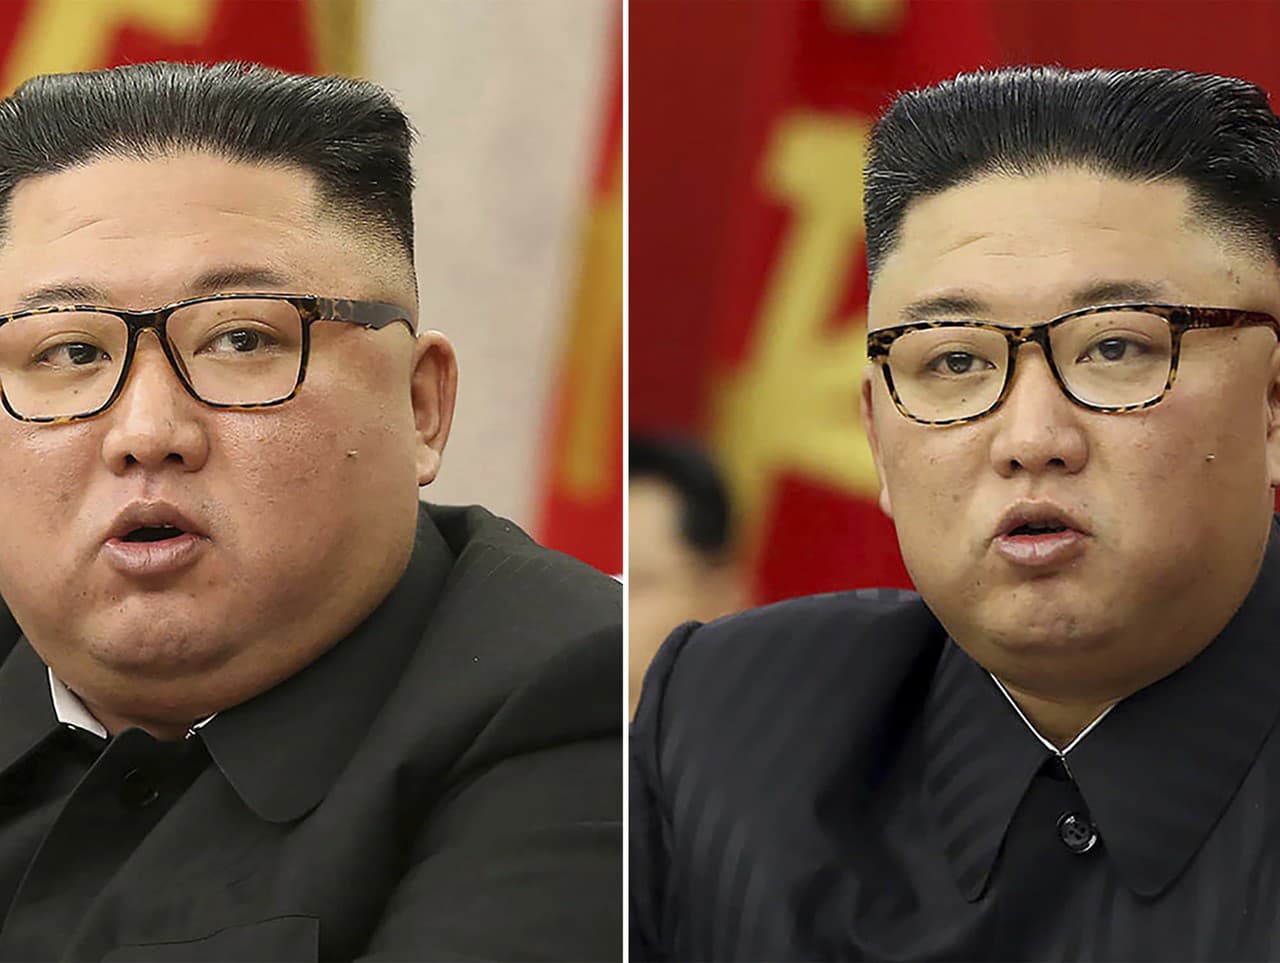 Kim Jong-un podľa záberov skutočne schudol.